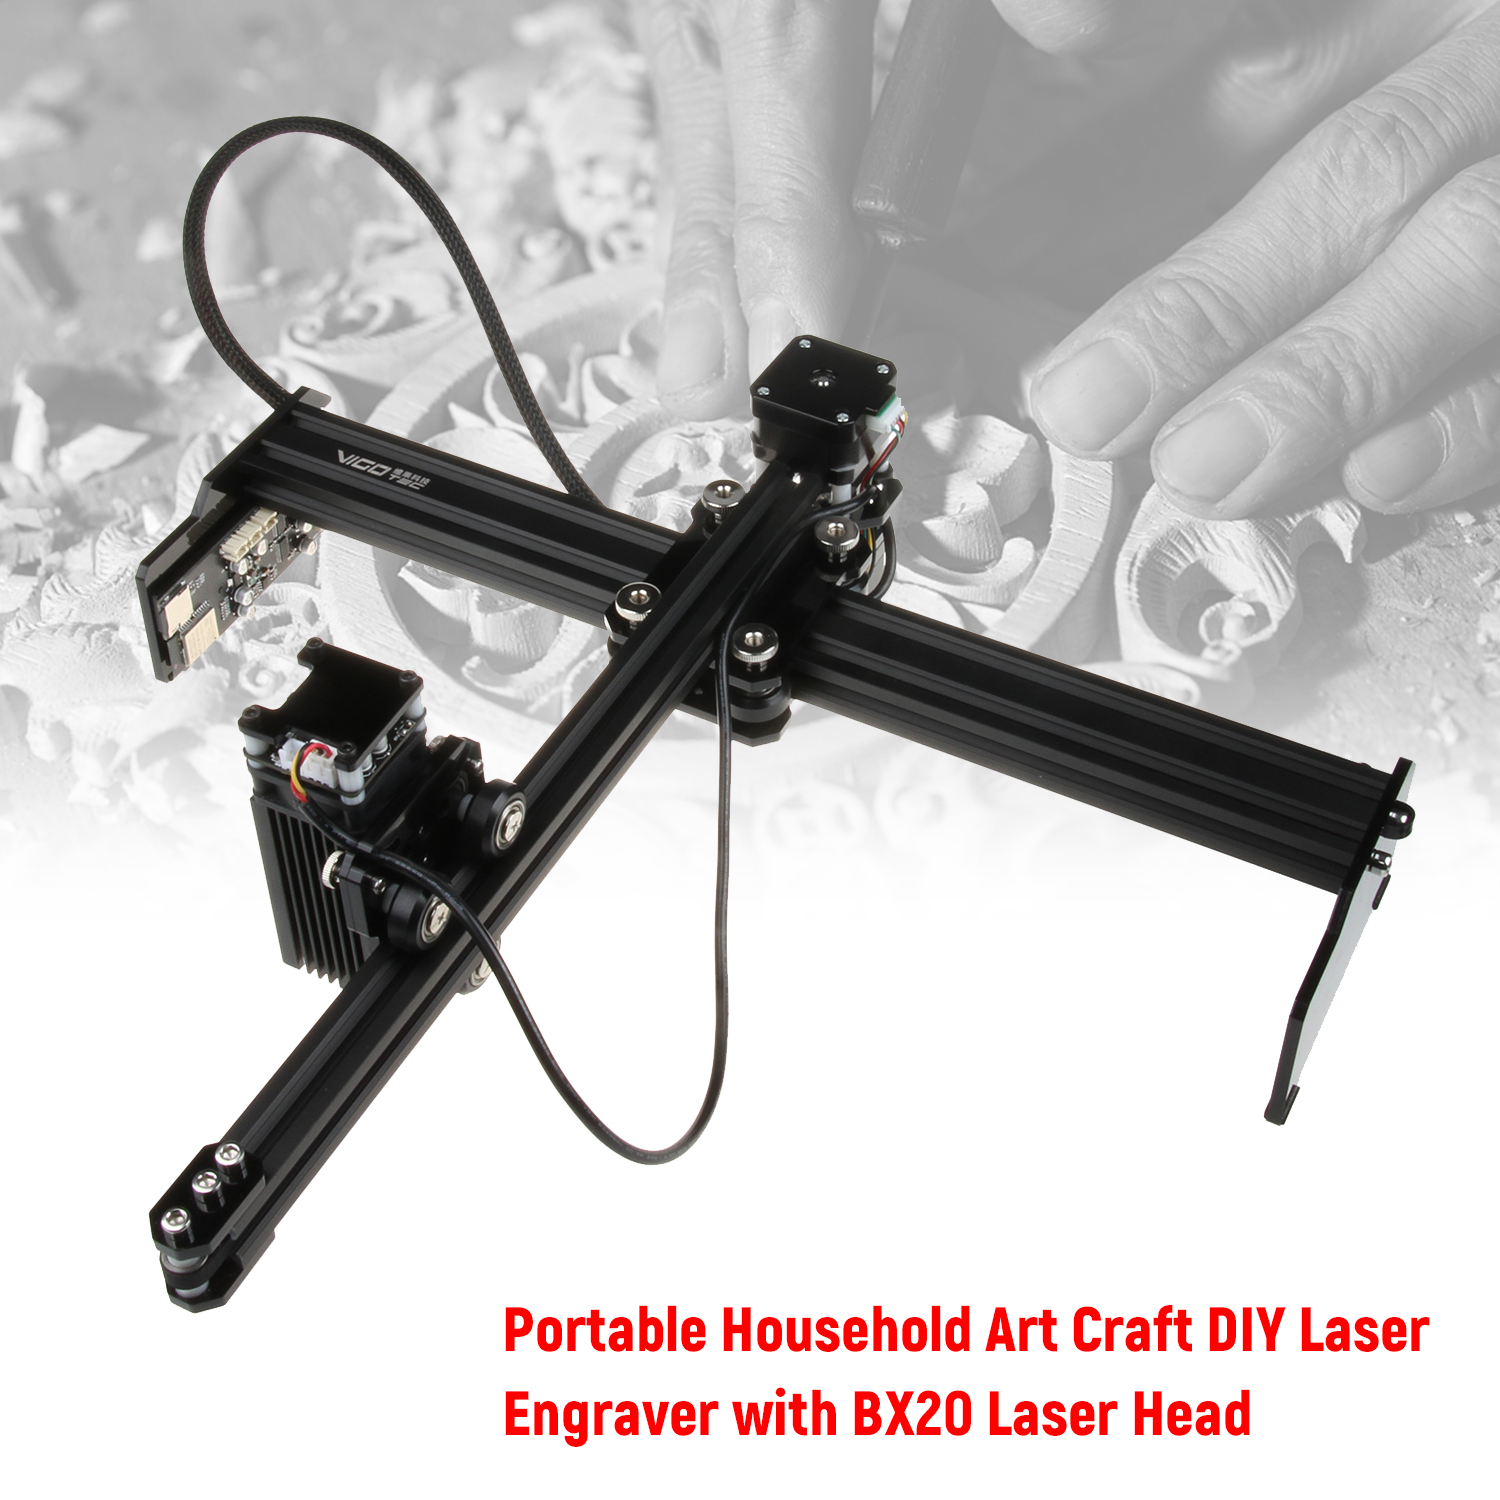 20W Laser Engraver Desktop Engraving Machine Printer CNC Engraving Cutter Household Art Craft DIY Laser Cutting Machine Tool